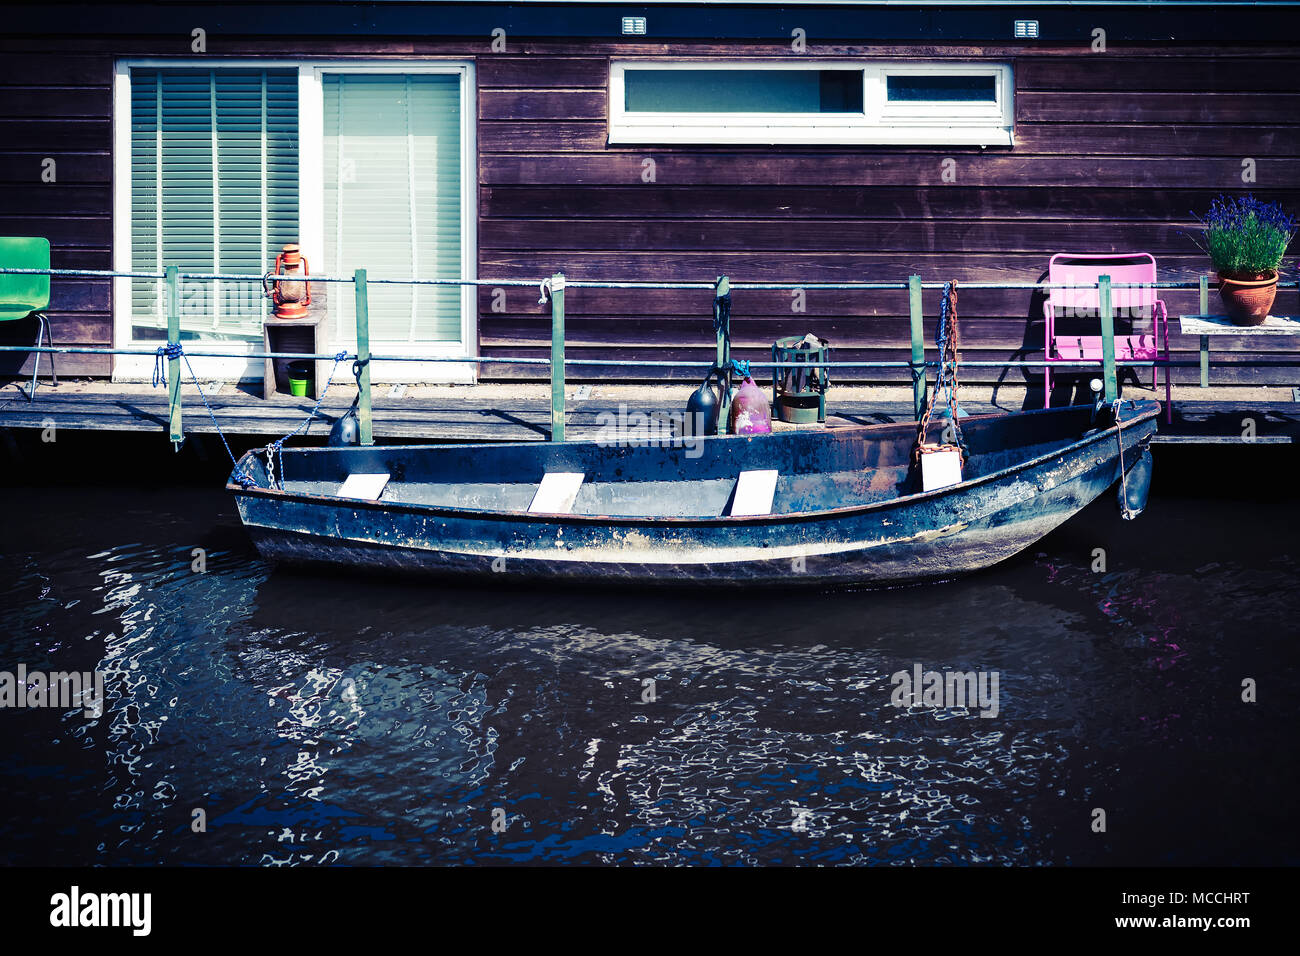 L'ancien bleu bateau Schooier (mendiant) amarré près d'une maison bateau, Amsterdam Banque D'Images